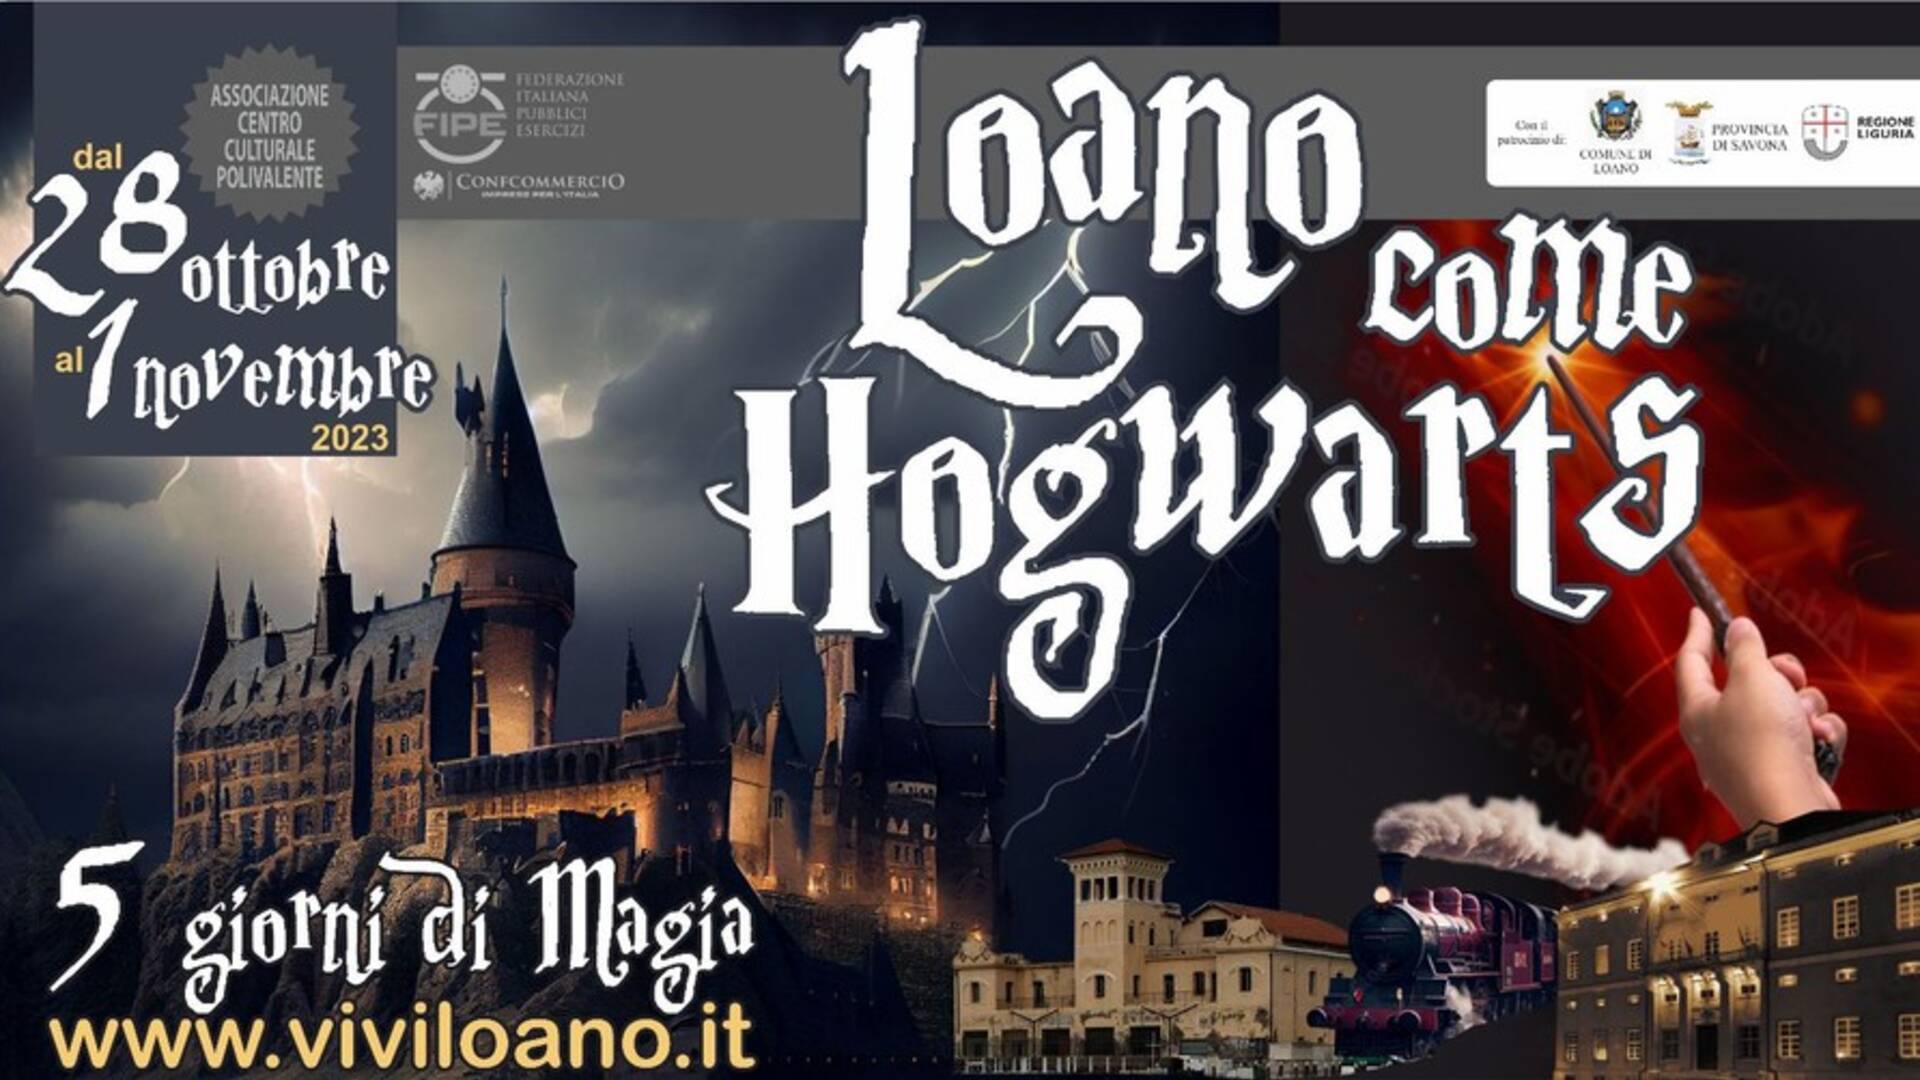 Ultime novità per “Loano come Hogwarts”: spicca la collaborazione con la Panini